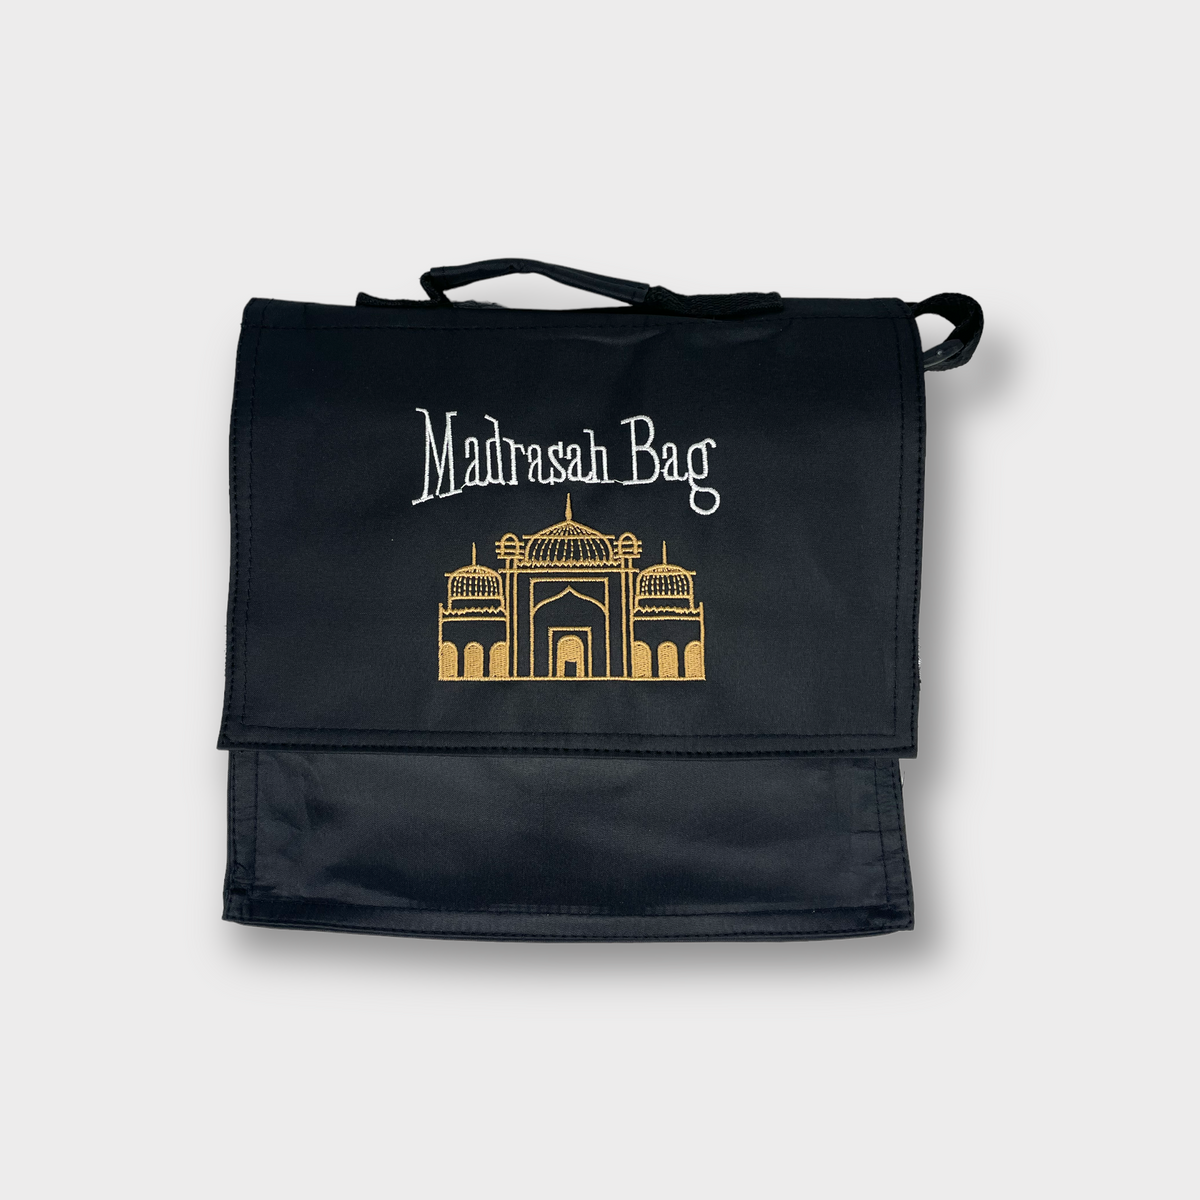 Black Madrasah Bag